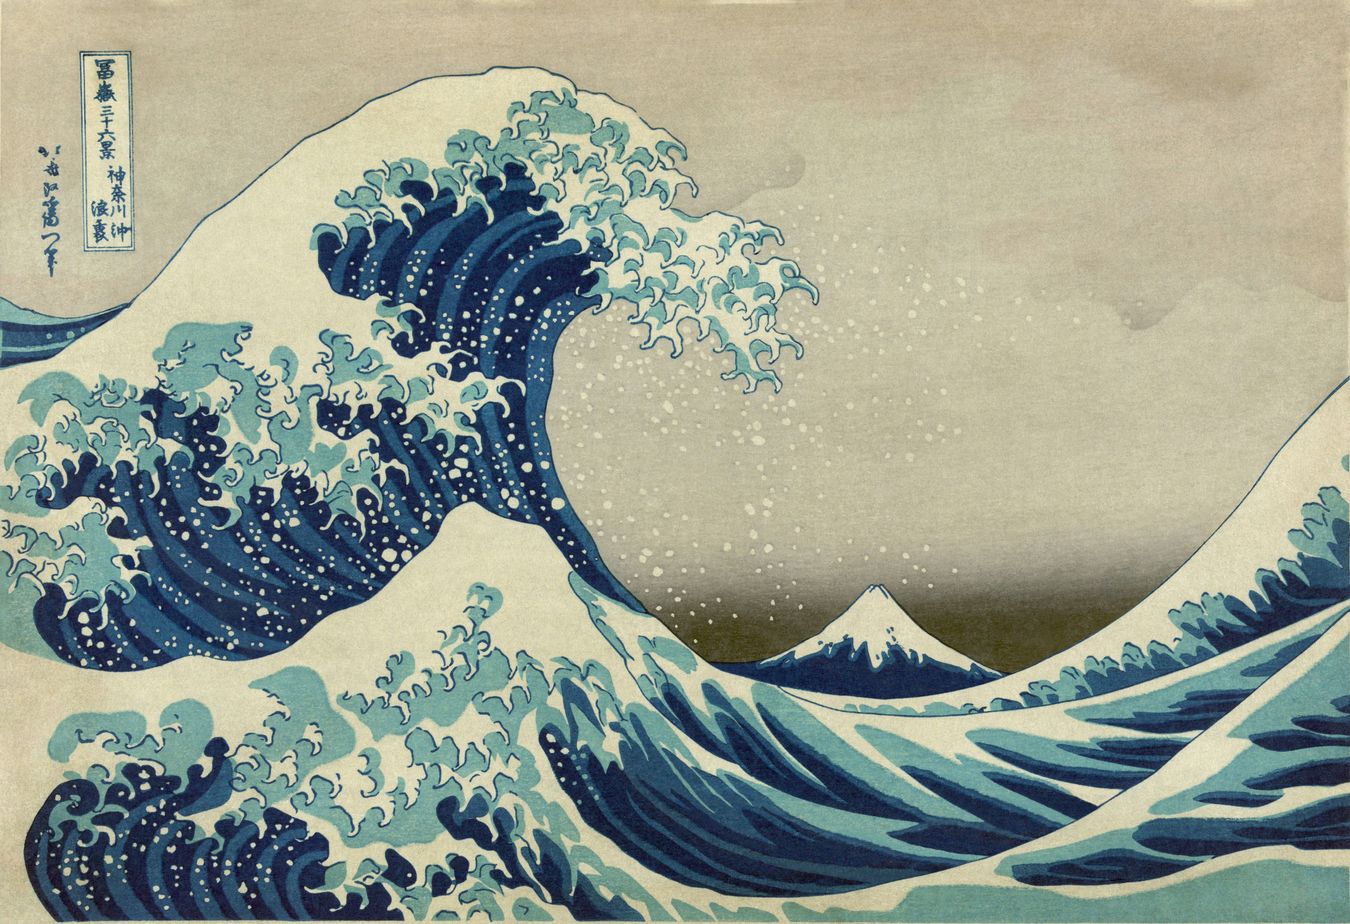 “La gran ola de Kanagawa” de Katsushika Hokusai